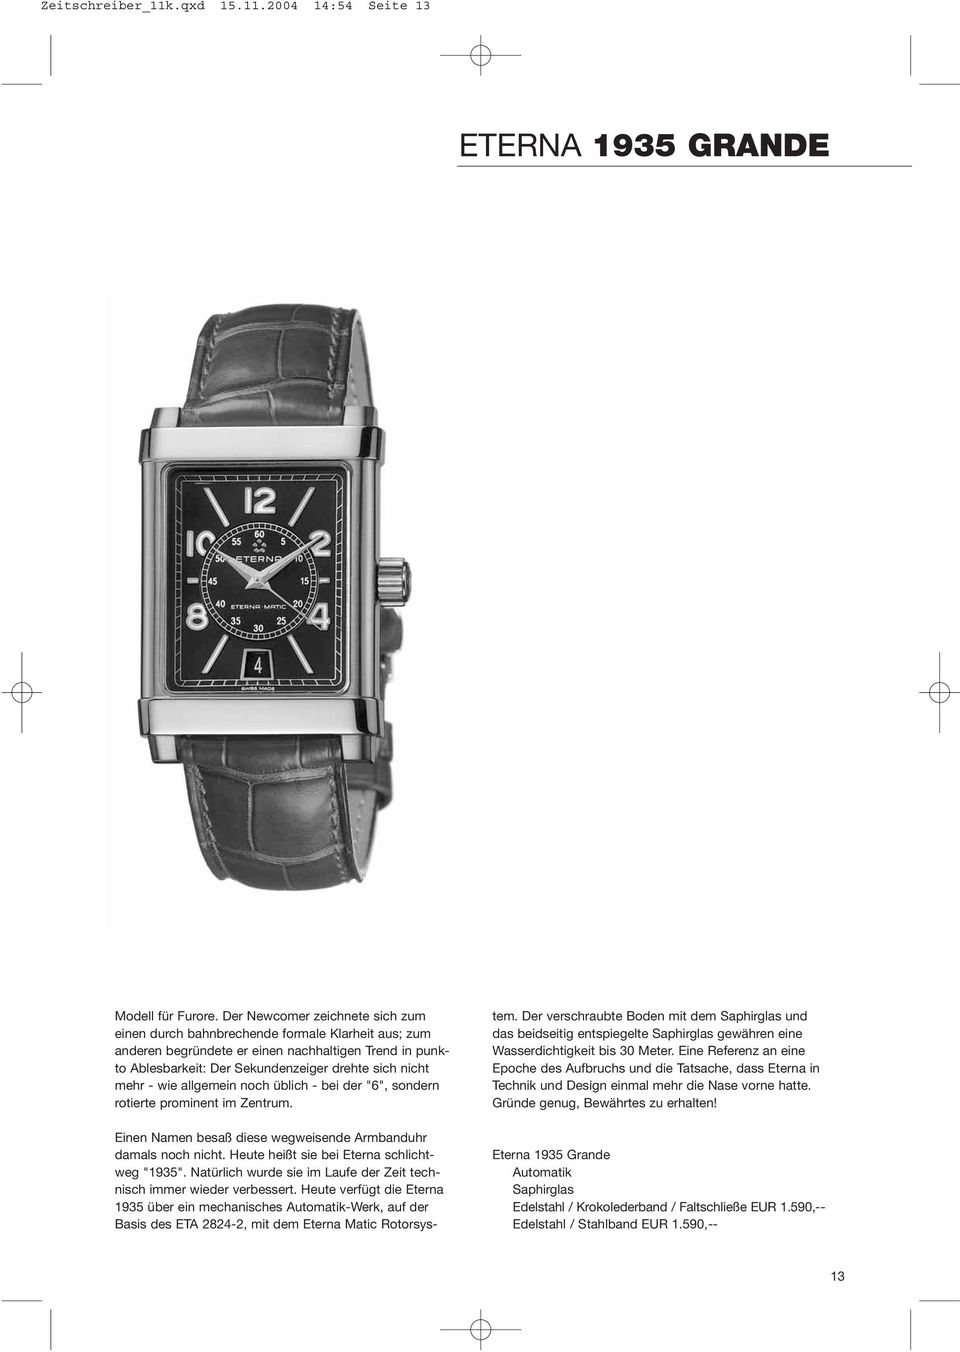 wie allgemein noch üblich - bei der "6", sondern rotierte prominent im Zentrum. Einen Namen besaß diese wegweisende Armbanduhr damals noch nicht. Heute heißt sie bei Eterna schlichtweg "1935".